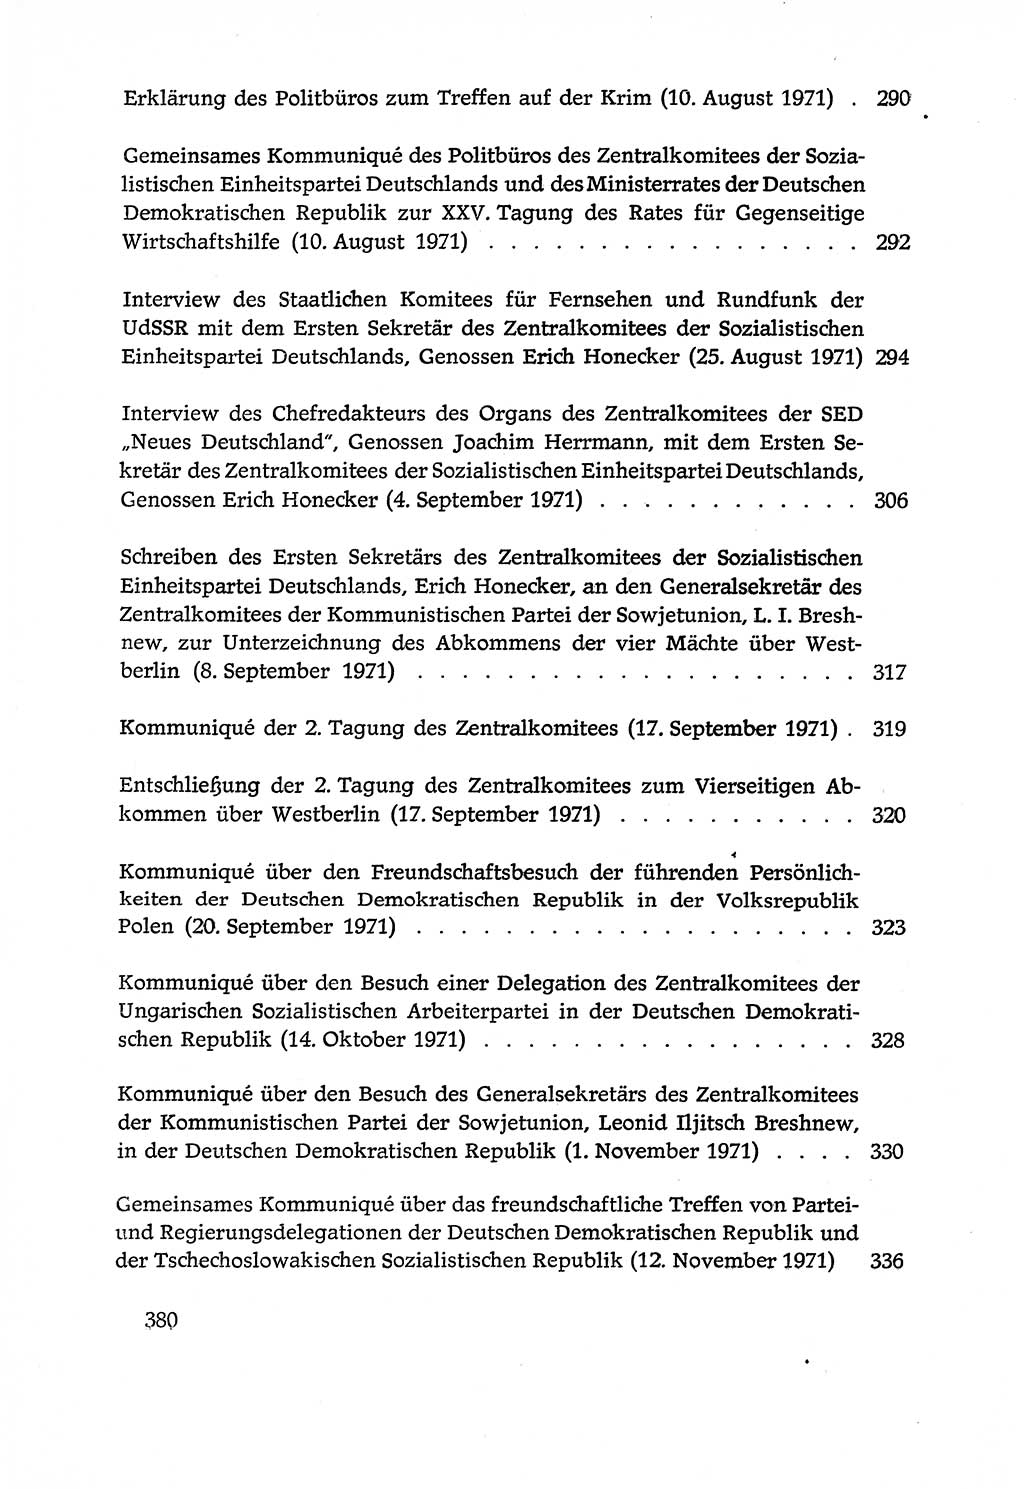 Dokumente der Sozialistischen Einheitspartei Deutschlands (SED) [Deutsche Demokratische Republik (DDR)] 1970-1971, Seite 380 (Dok. SED DDR 1970-1971, S. 380)